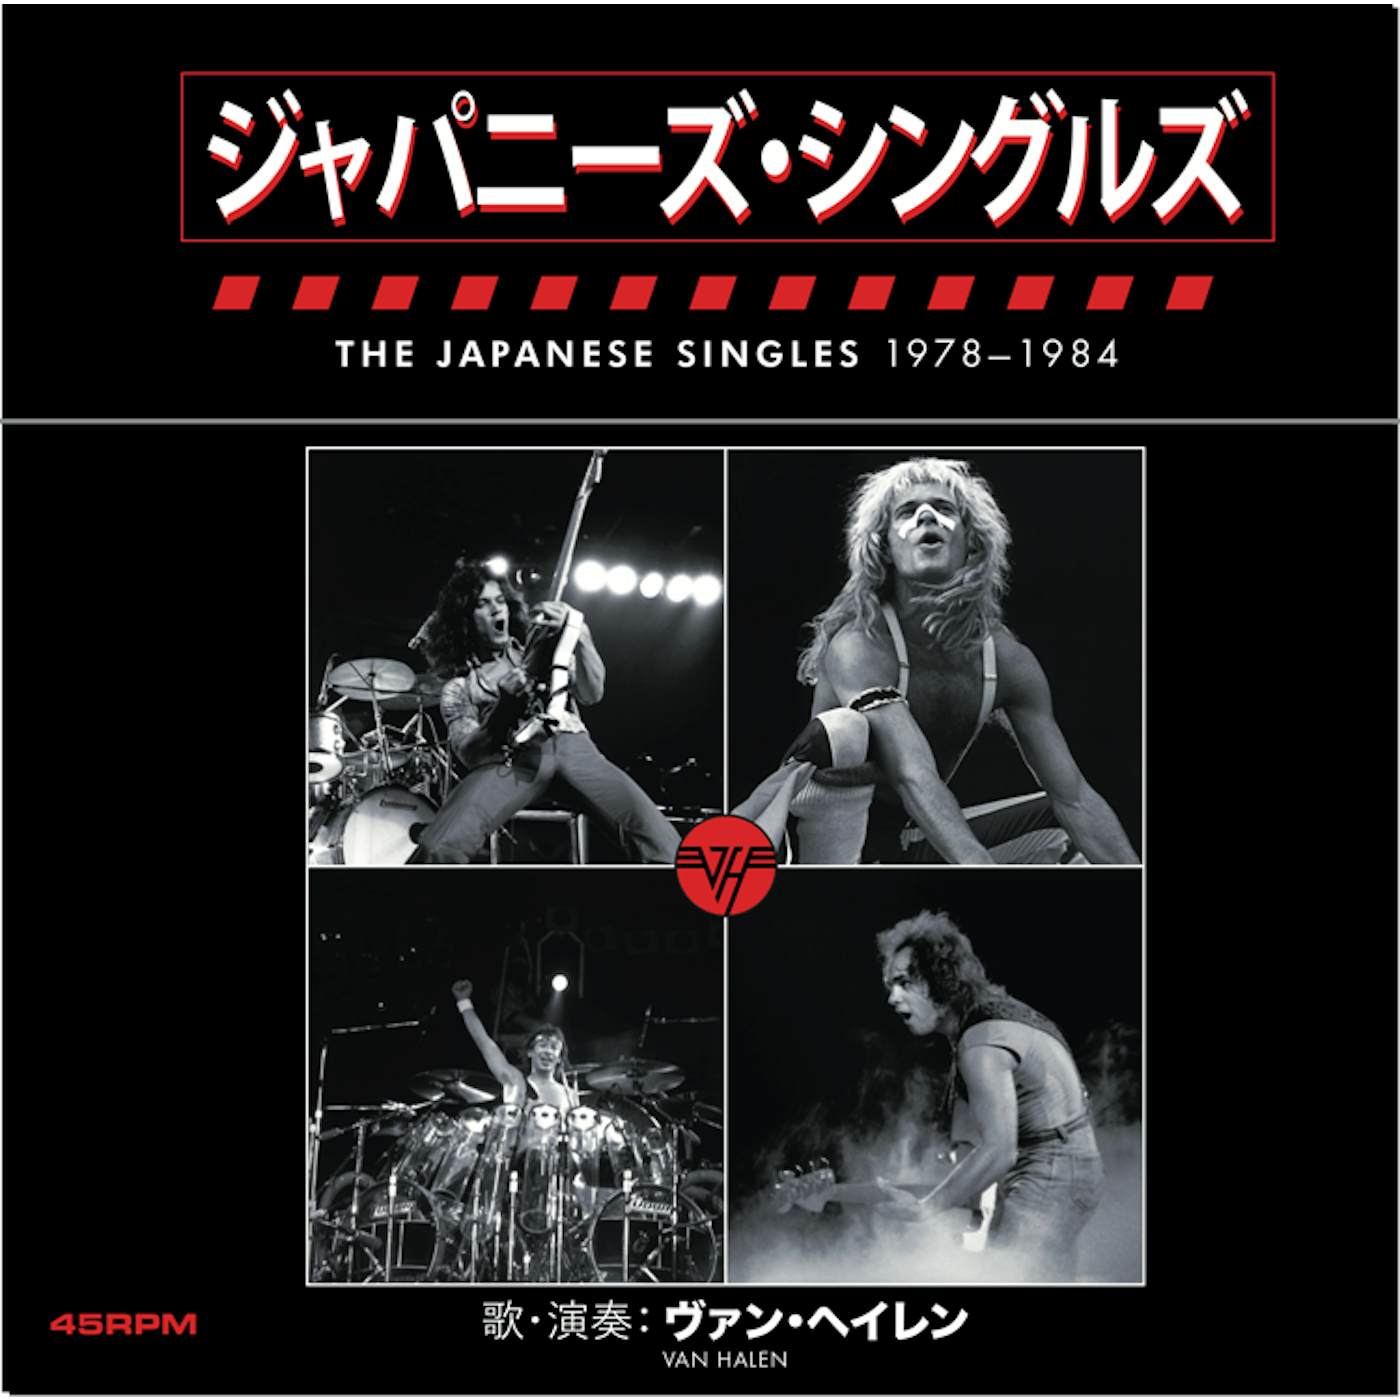 Van Halen The Japanese Singles 1978-1984 Vinyl Boxed Set